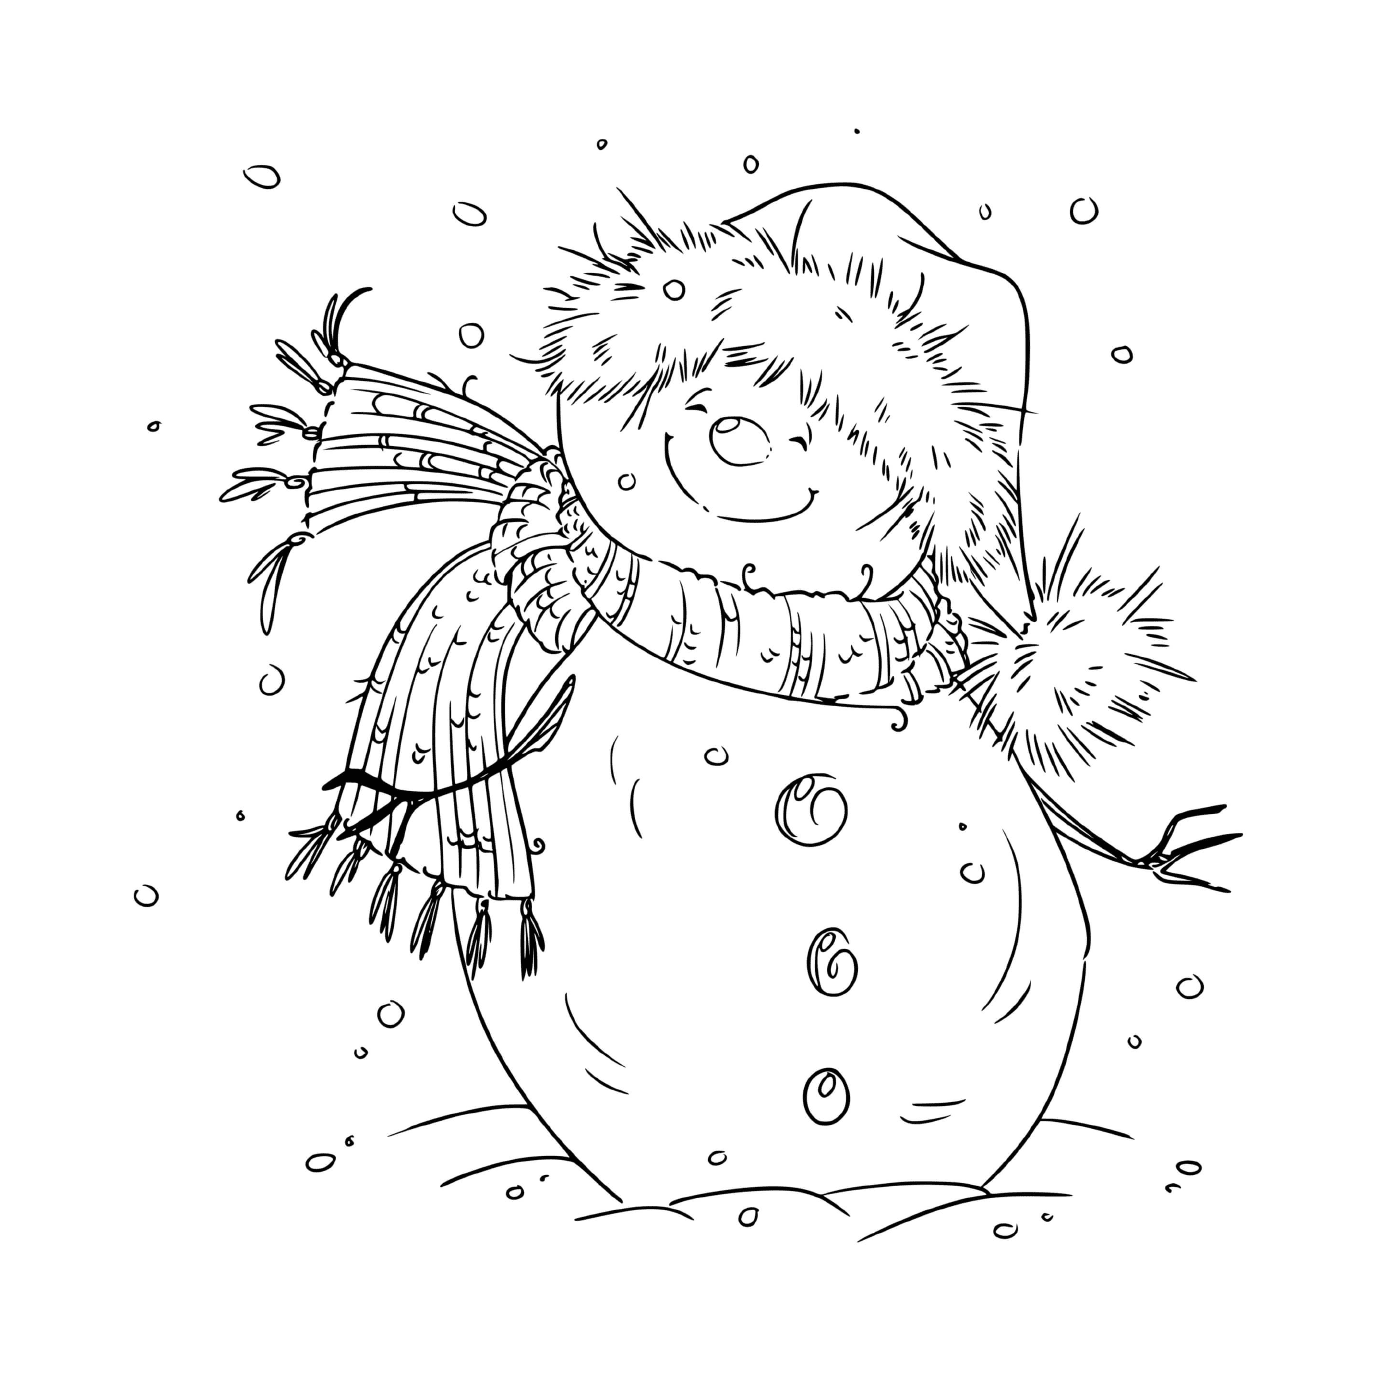  Um boneco de neve sorrindo pelo vento fresco na véspera de Natal 